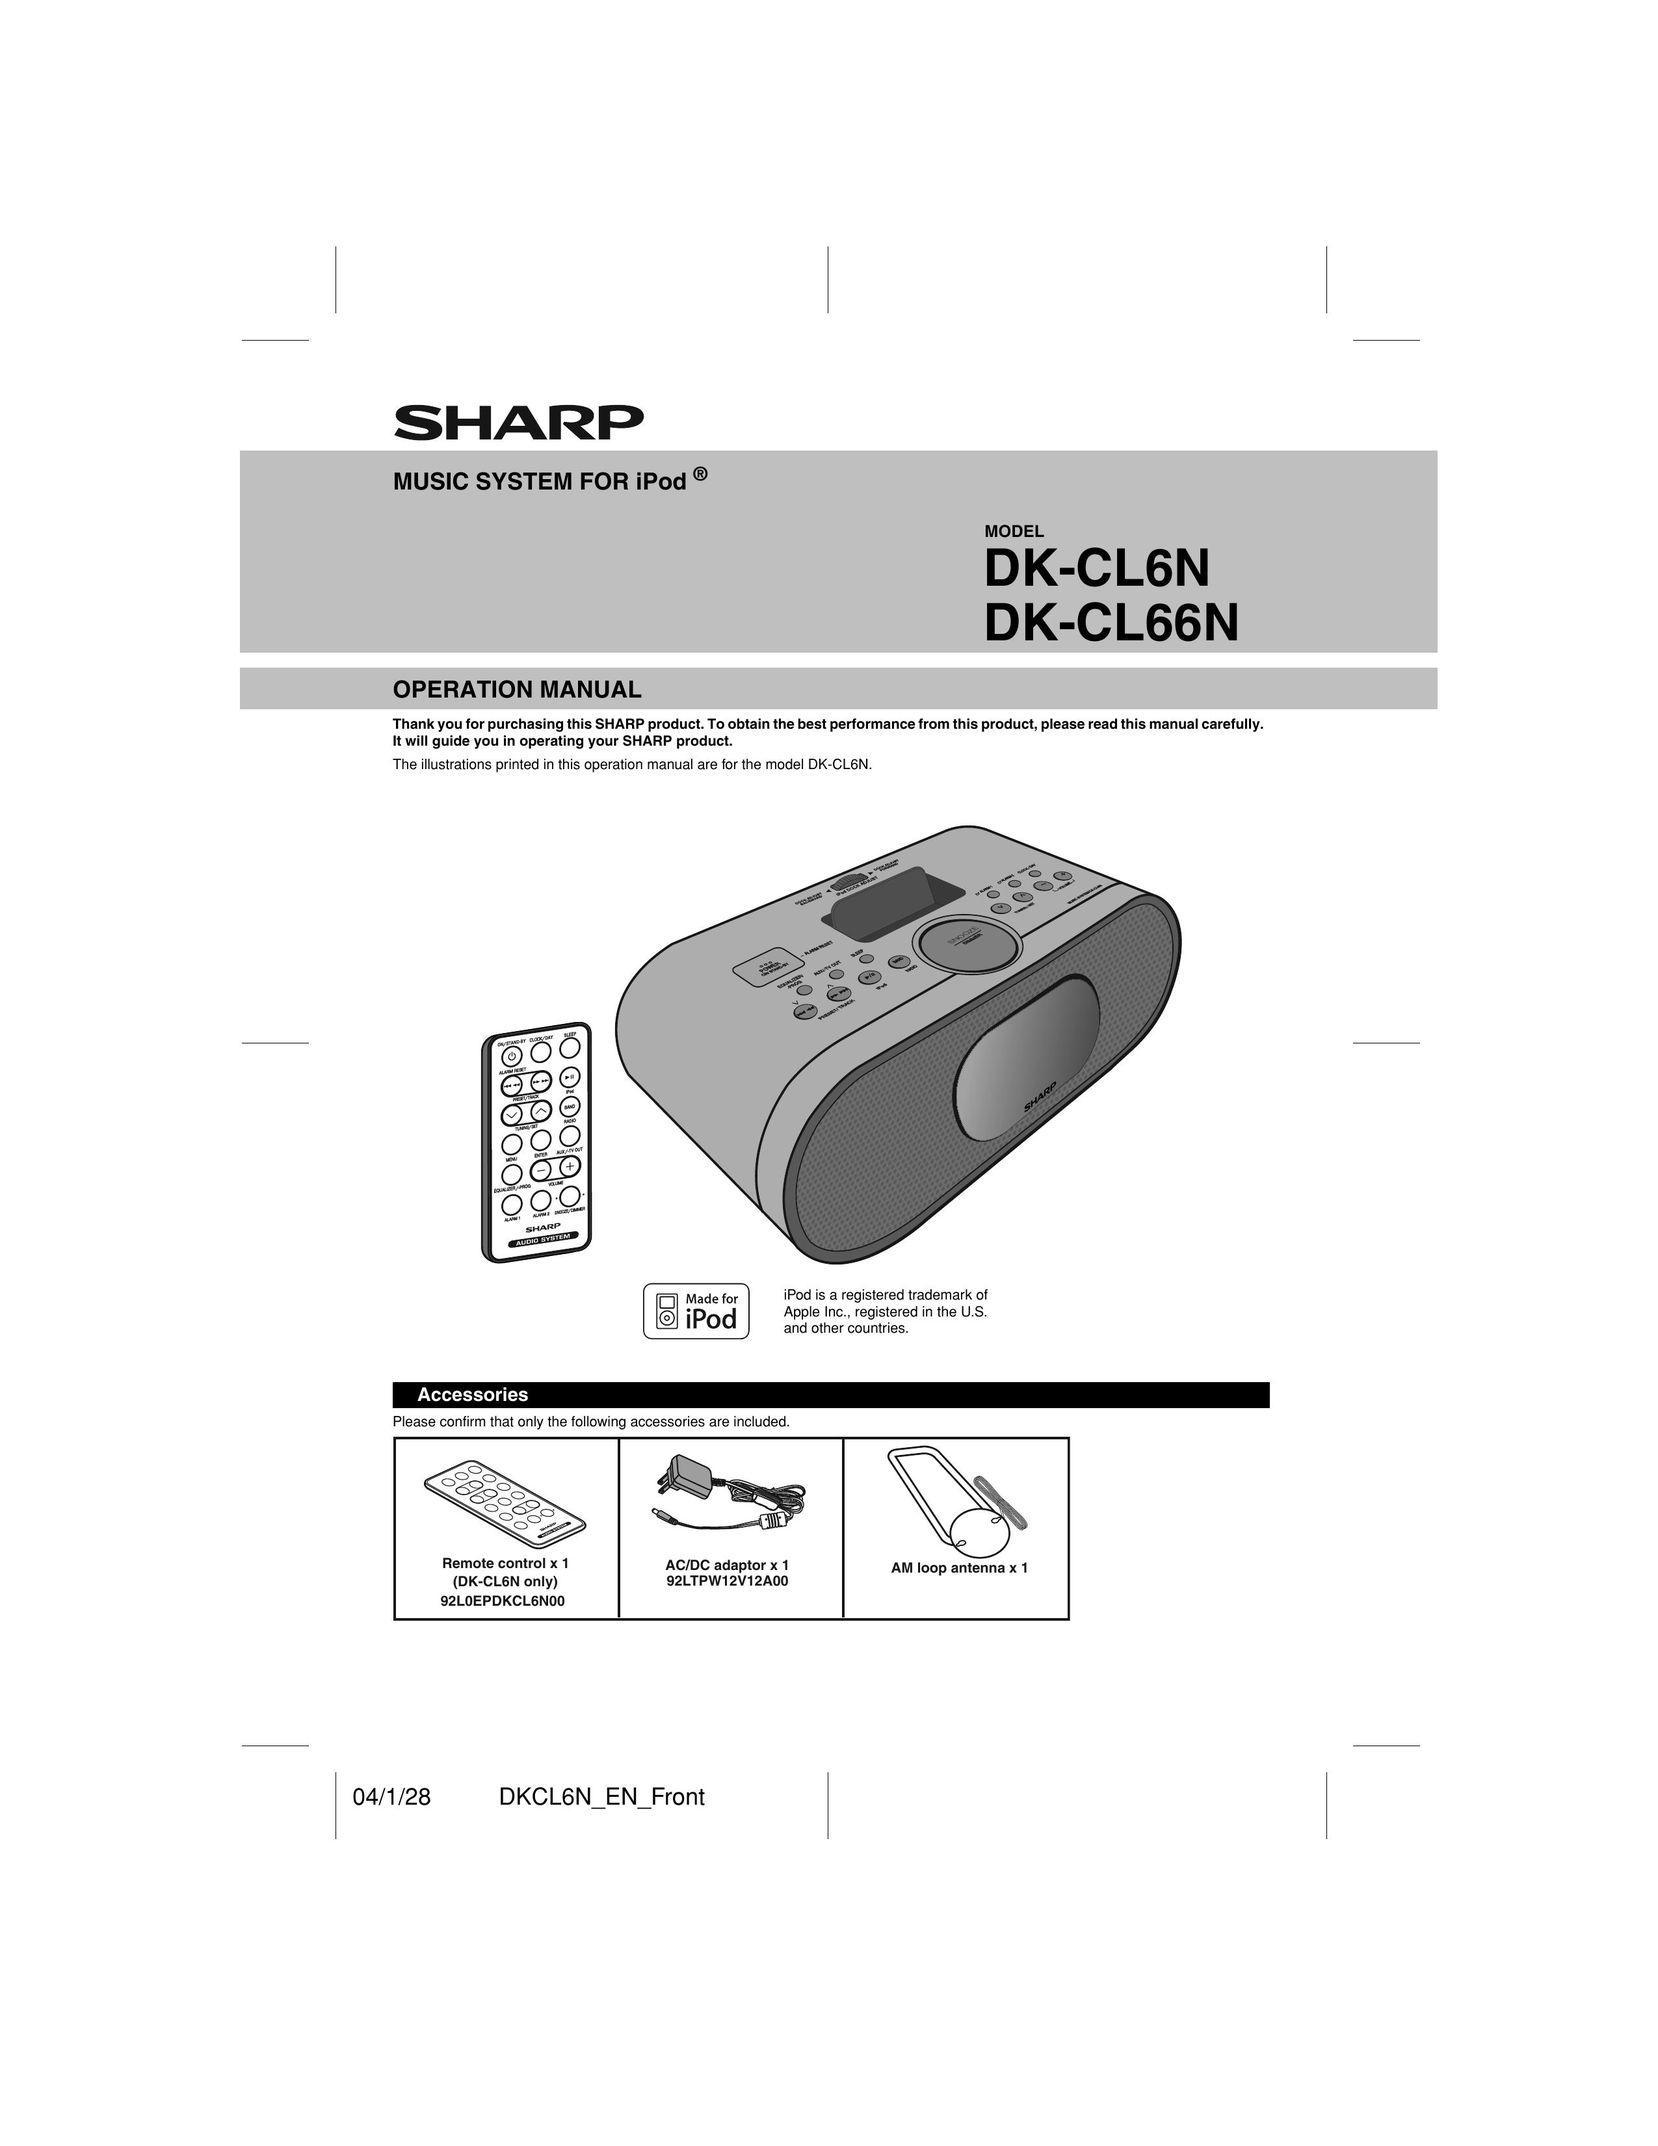 Sharp DK-CL66N MP3 Docking Station User Manual